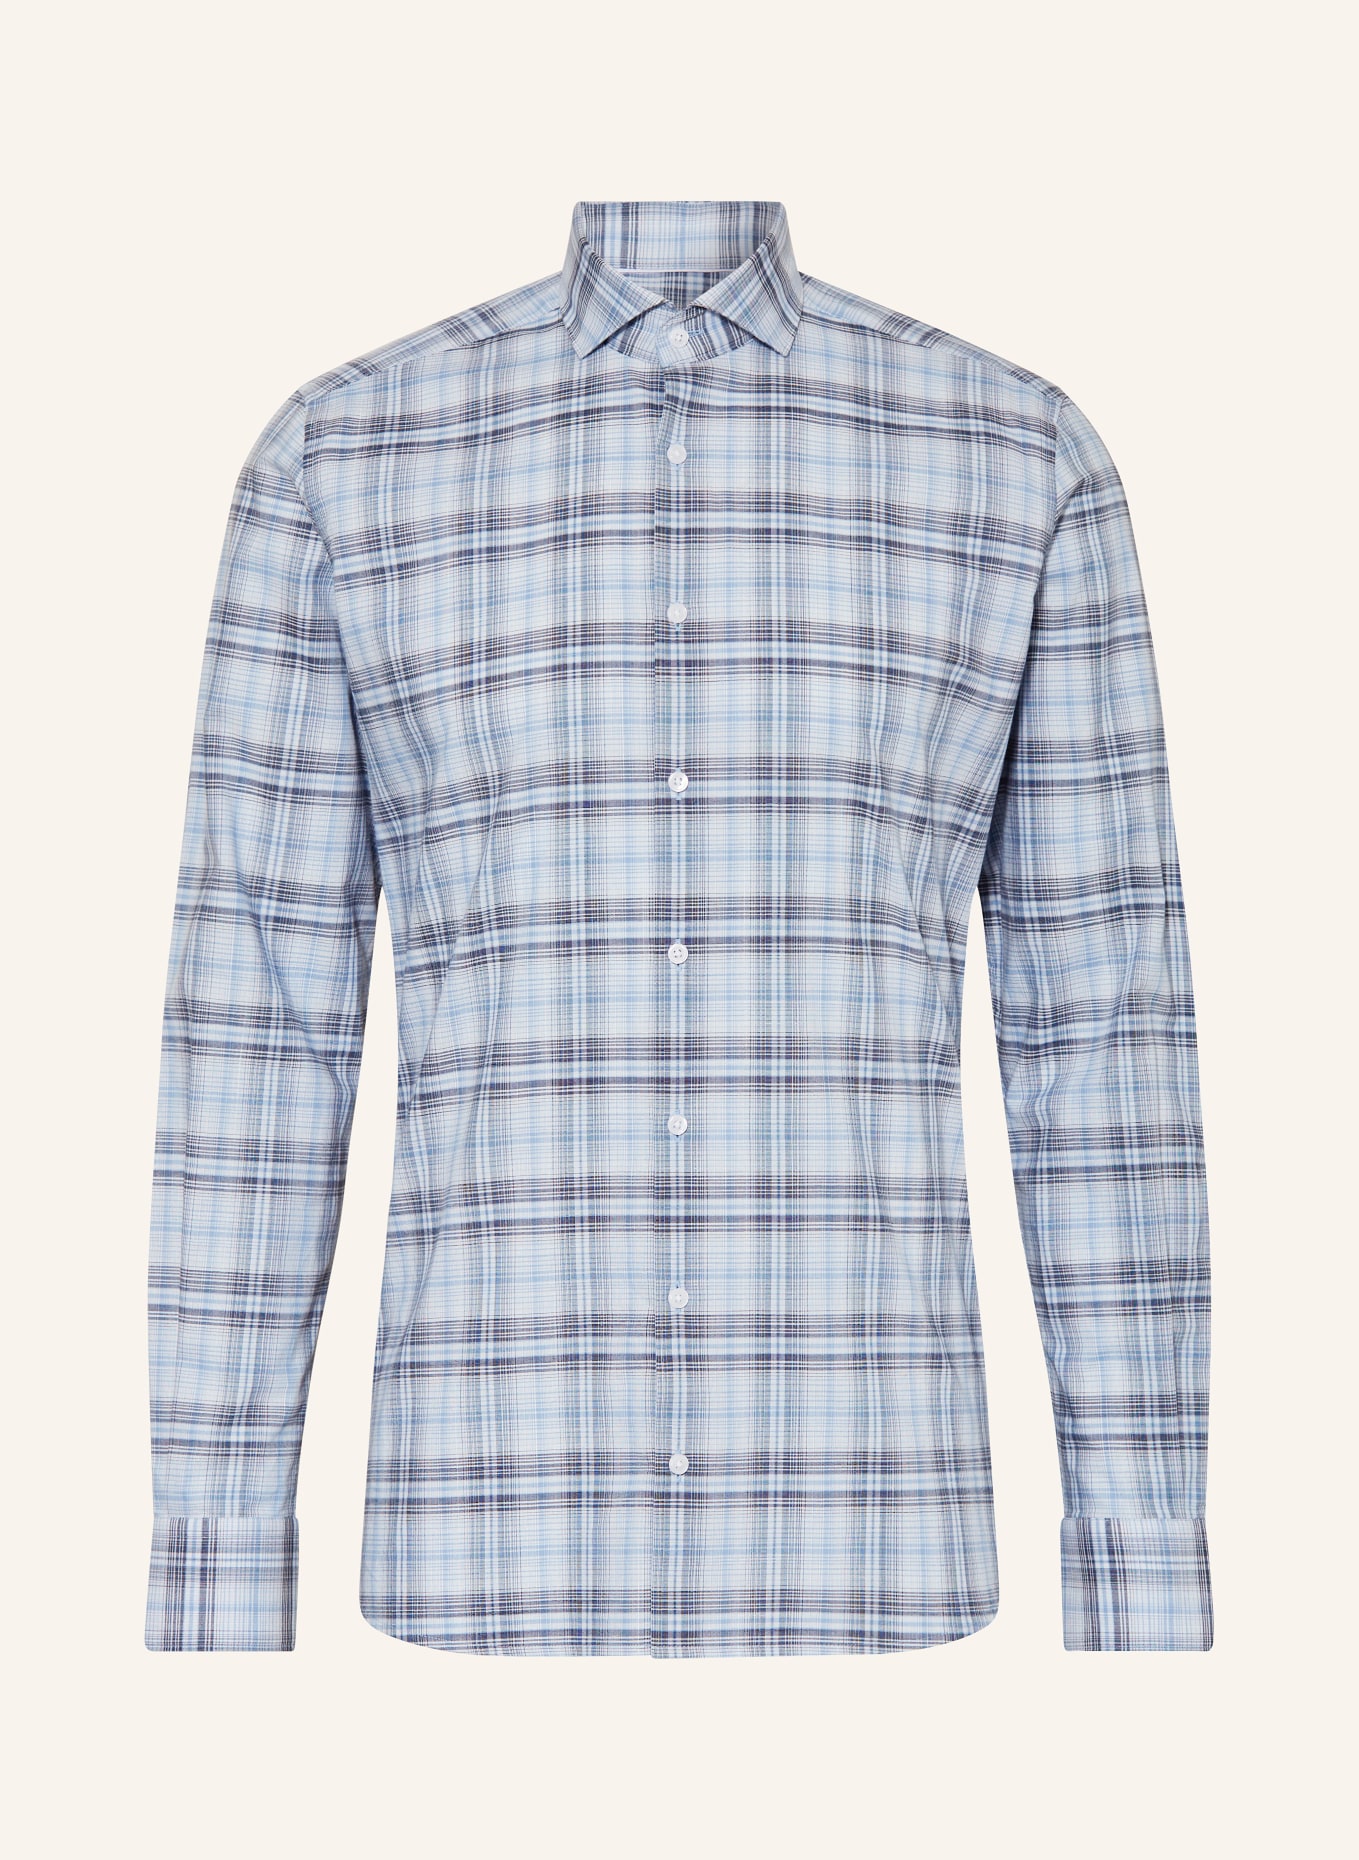 PAUL Shirt slim fit, Color: BLUE/ LIGHT BLUE (Image 1)